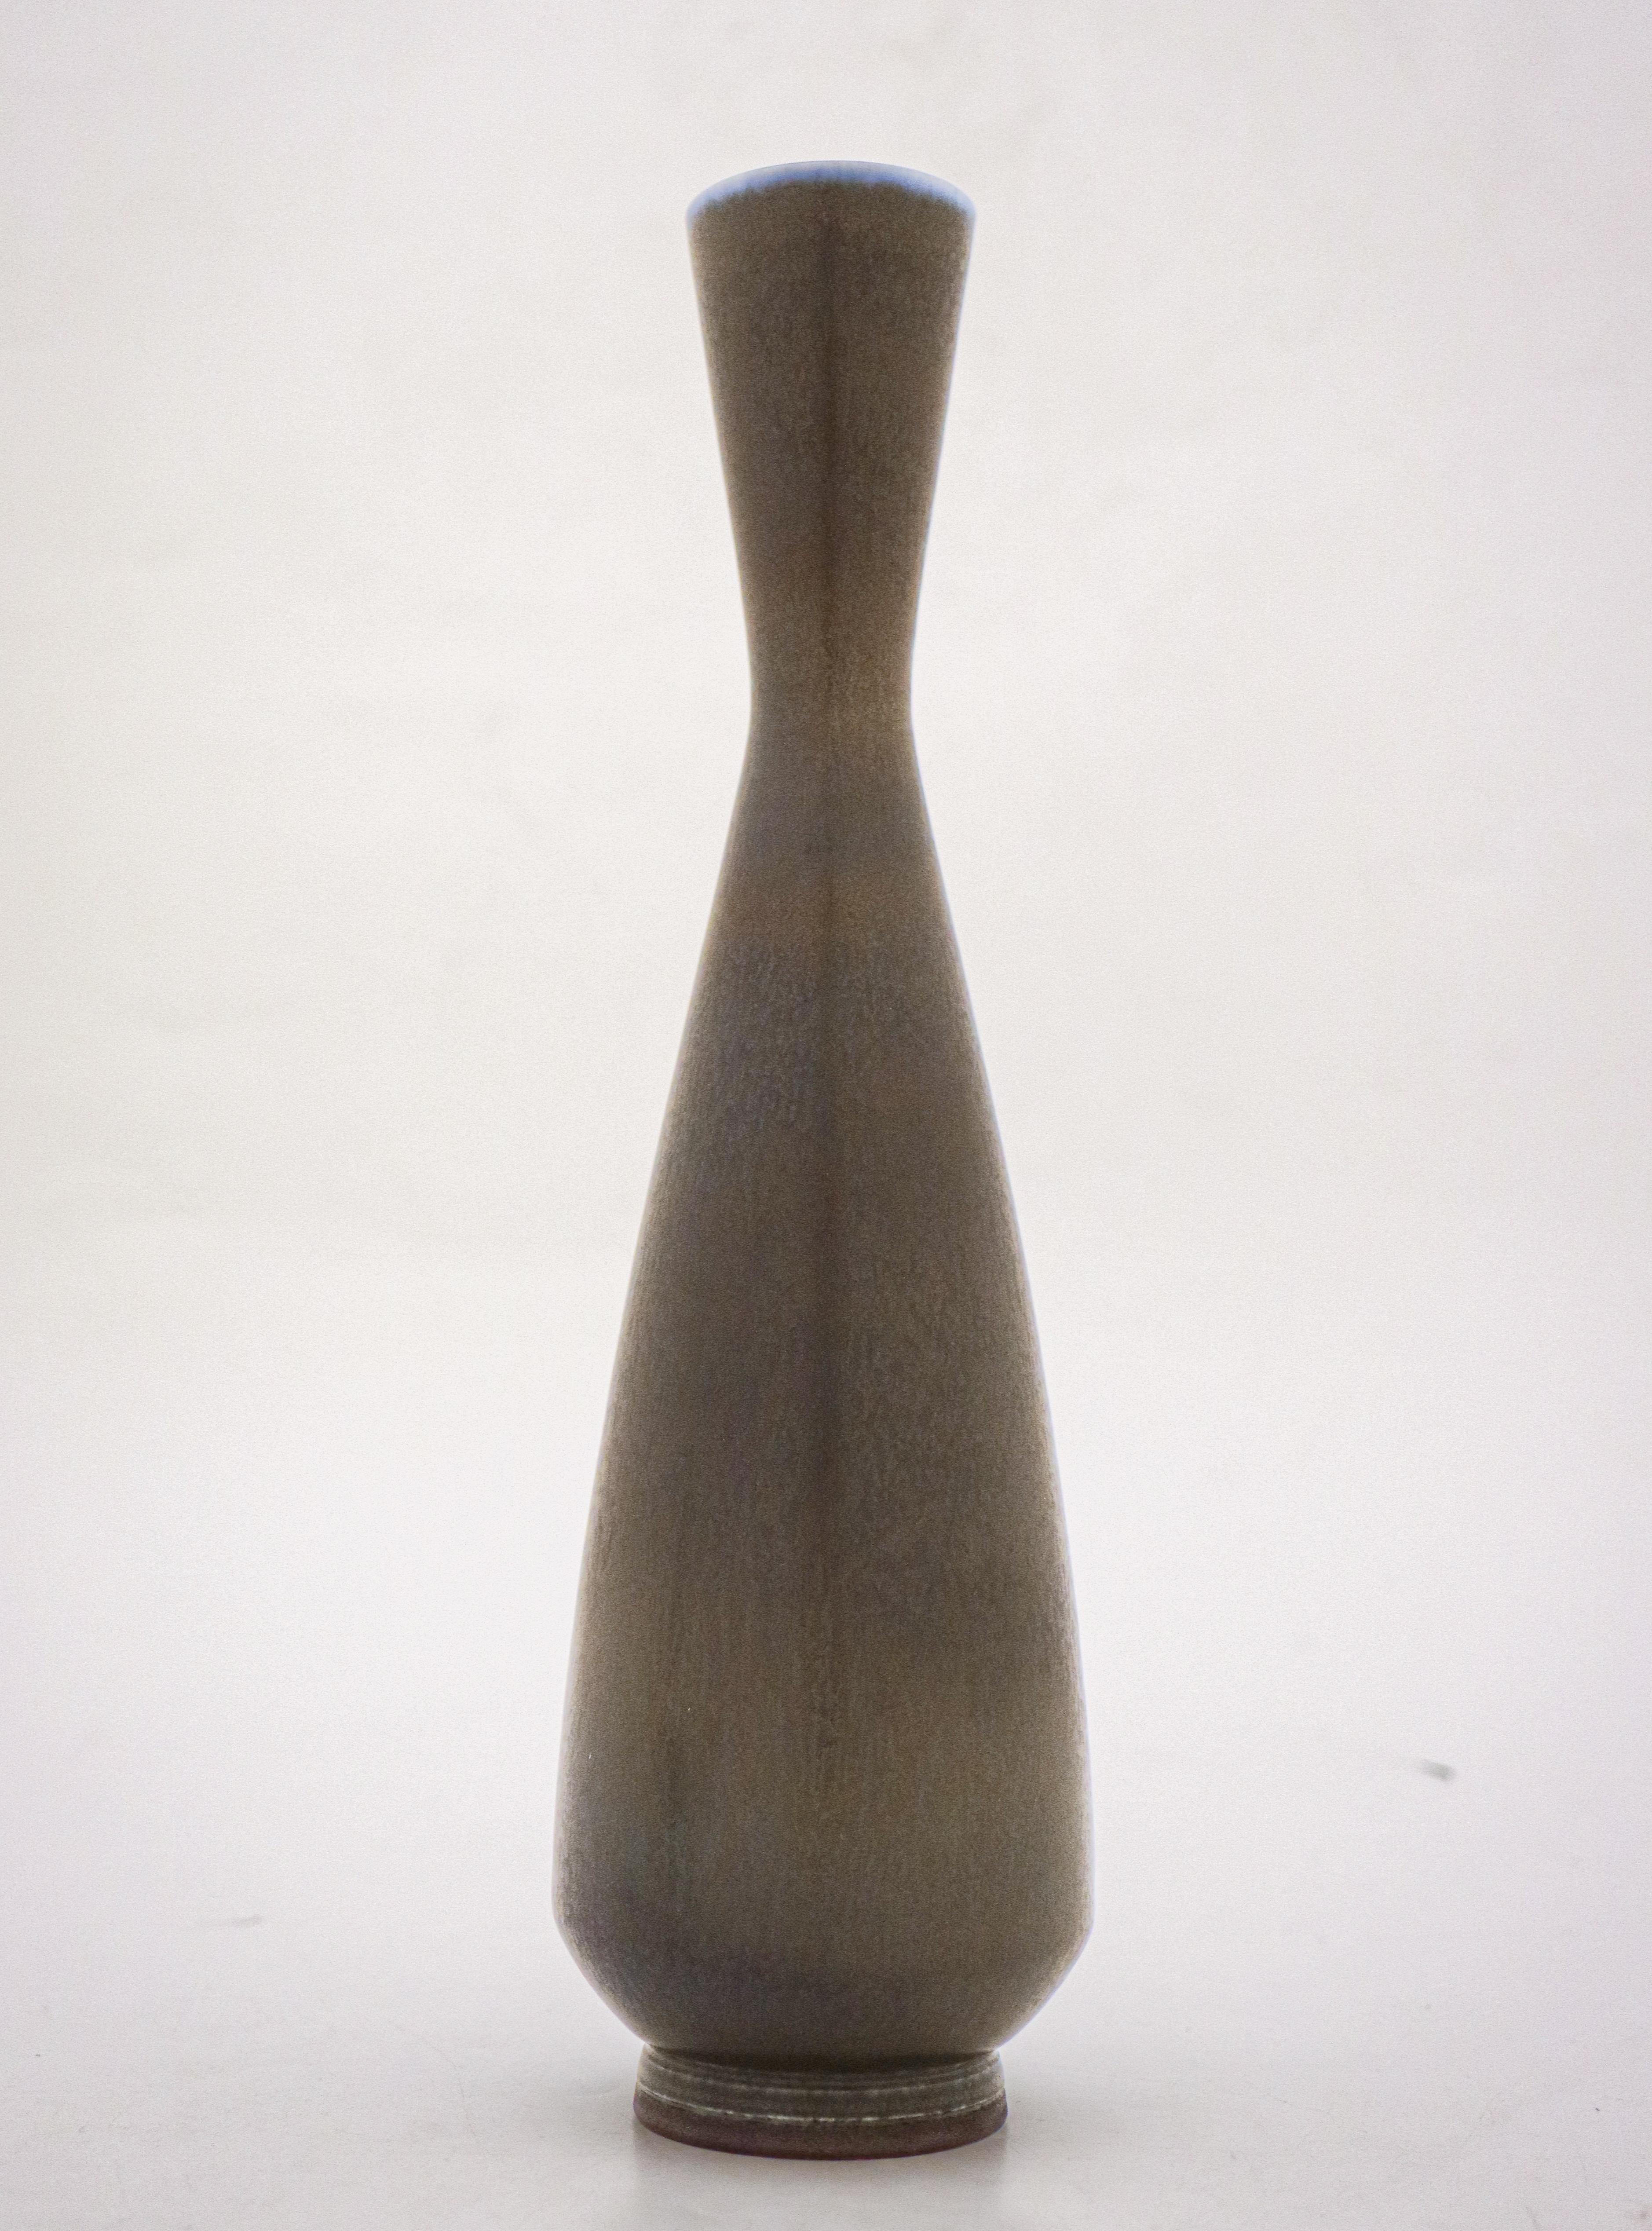 Un joli vase avec une glaçure de fourrure de haricot brun et bleu conçu par Berndt Friberg à Gustavsberg à Stockholm, le vase est 27 cm de haut. Il est marqué comme sur la photo et a été fabriqué en 1962. Il est en très bon état, à l'exception de